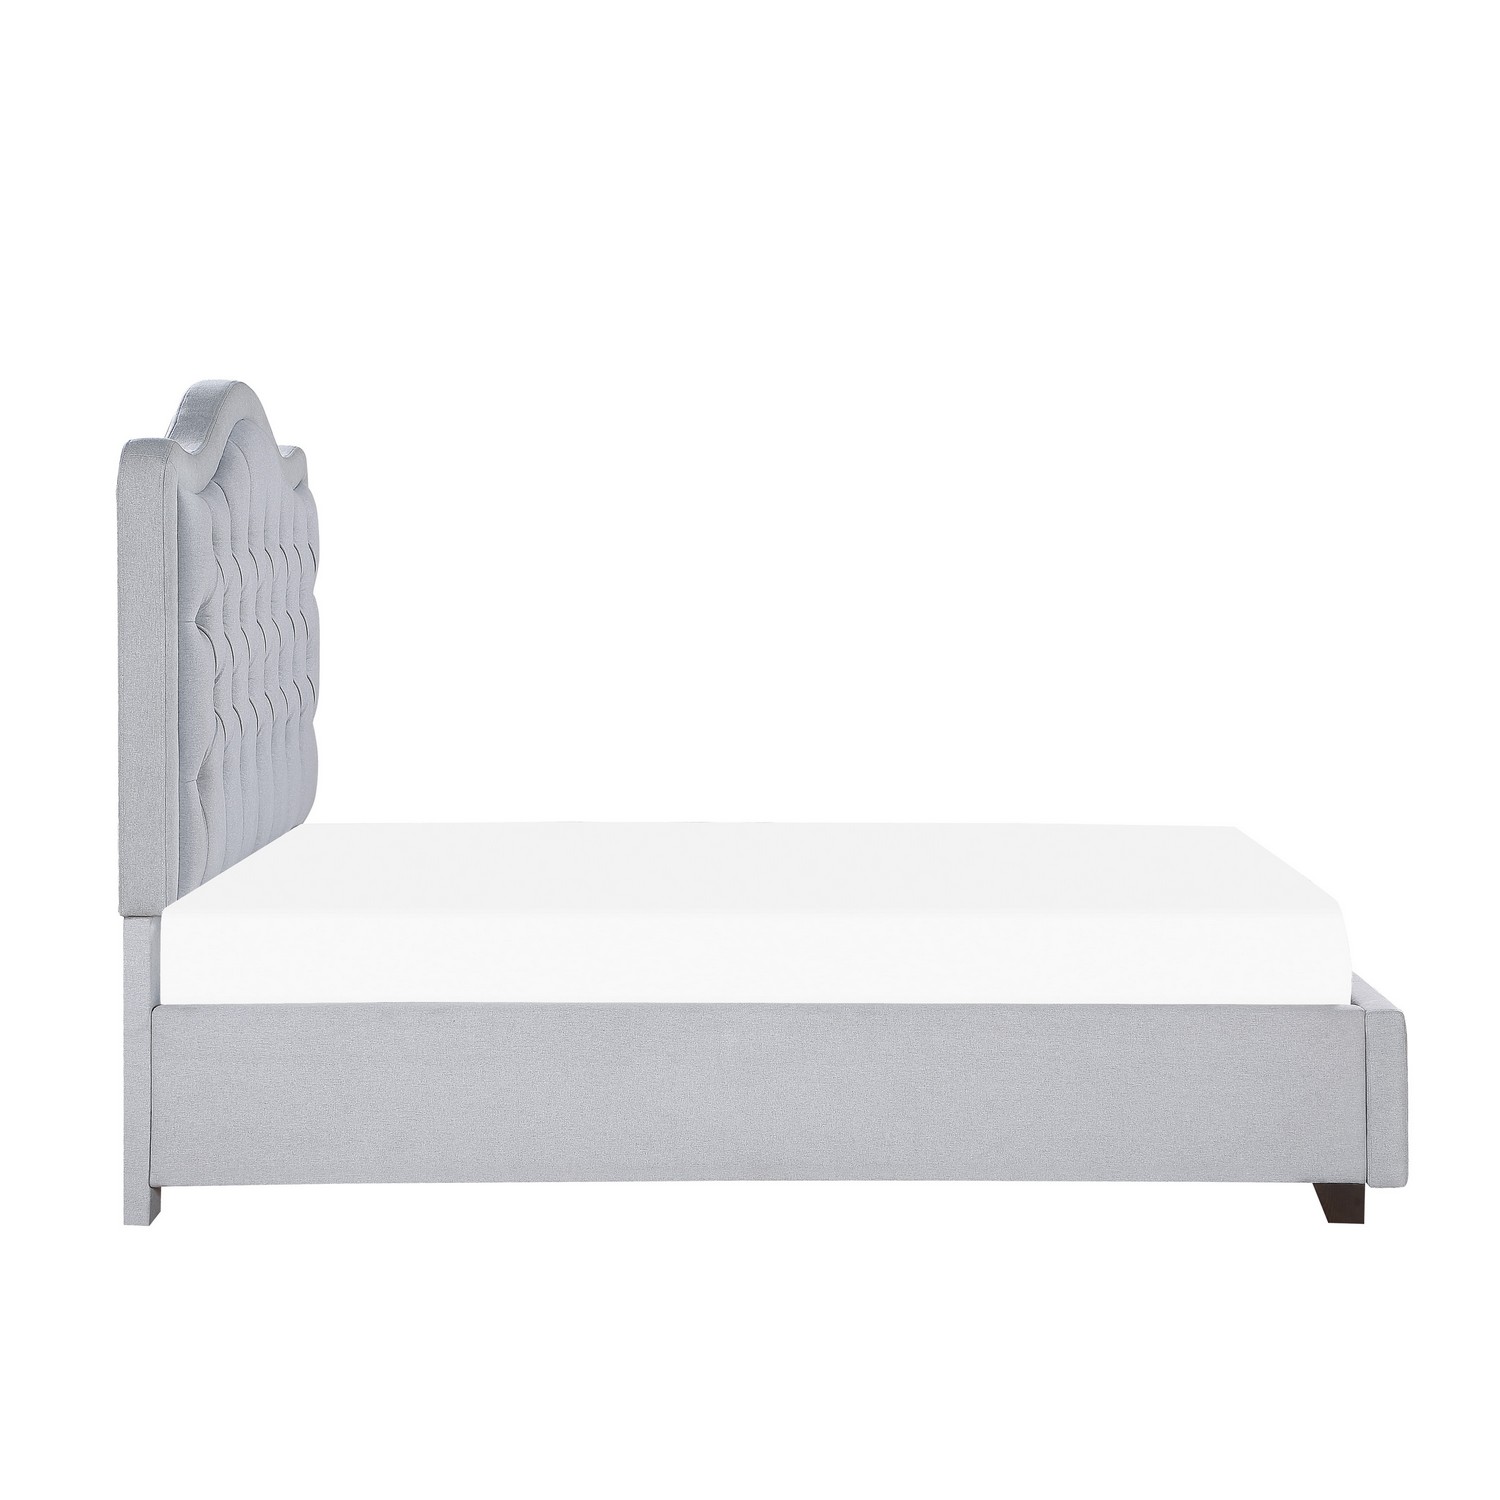 Homelegance Toddrick Tufted Platform Storage Bed - Gray